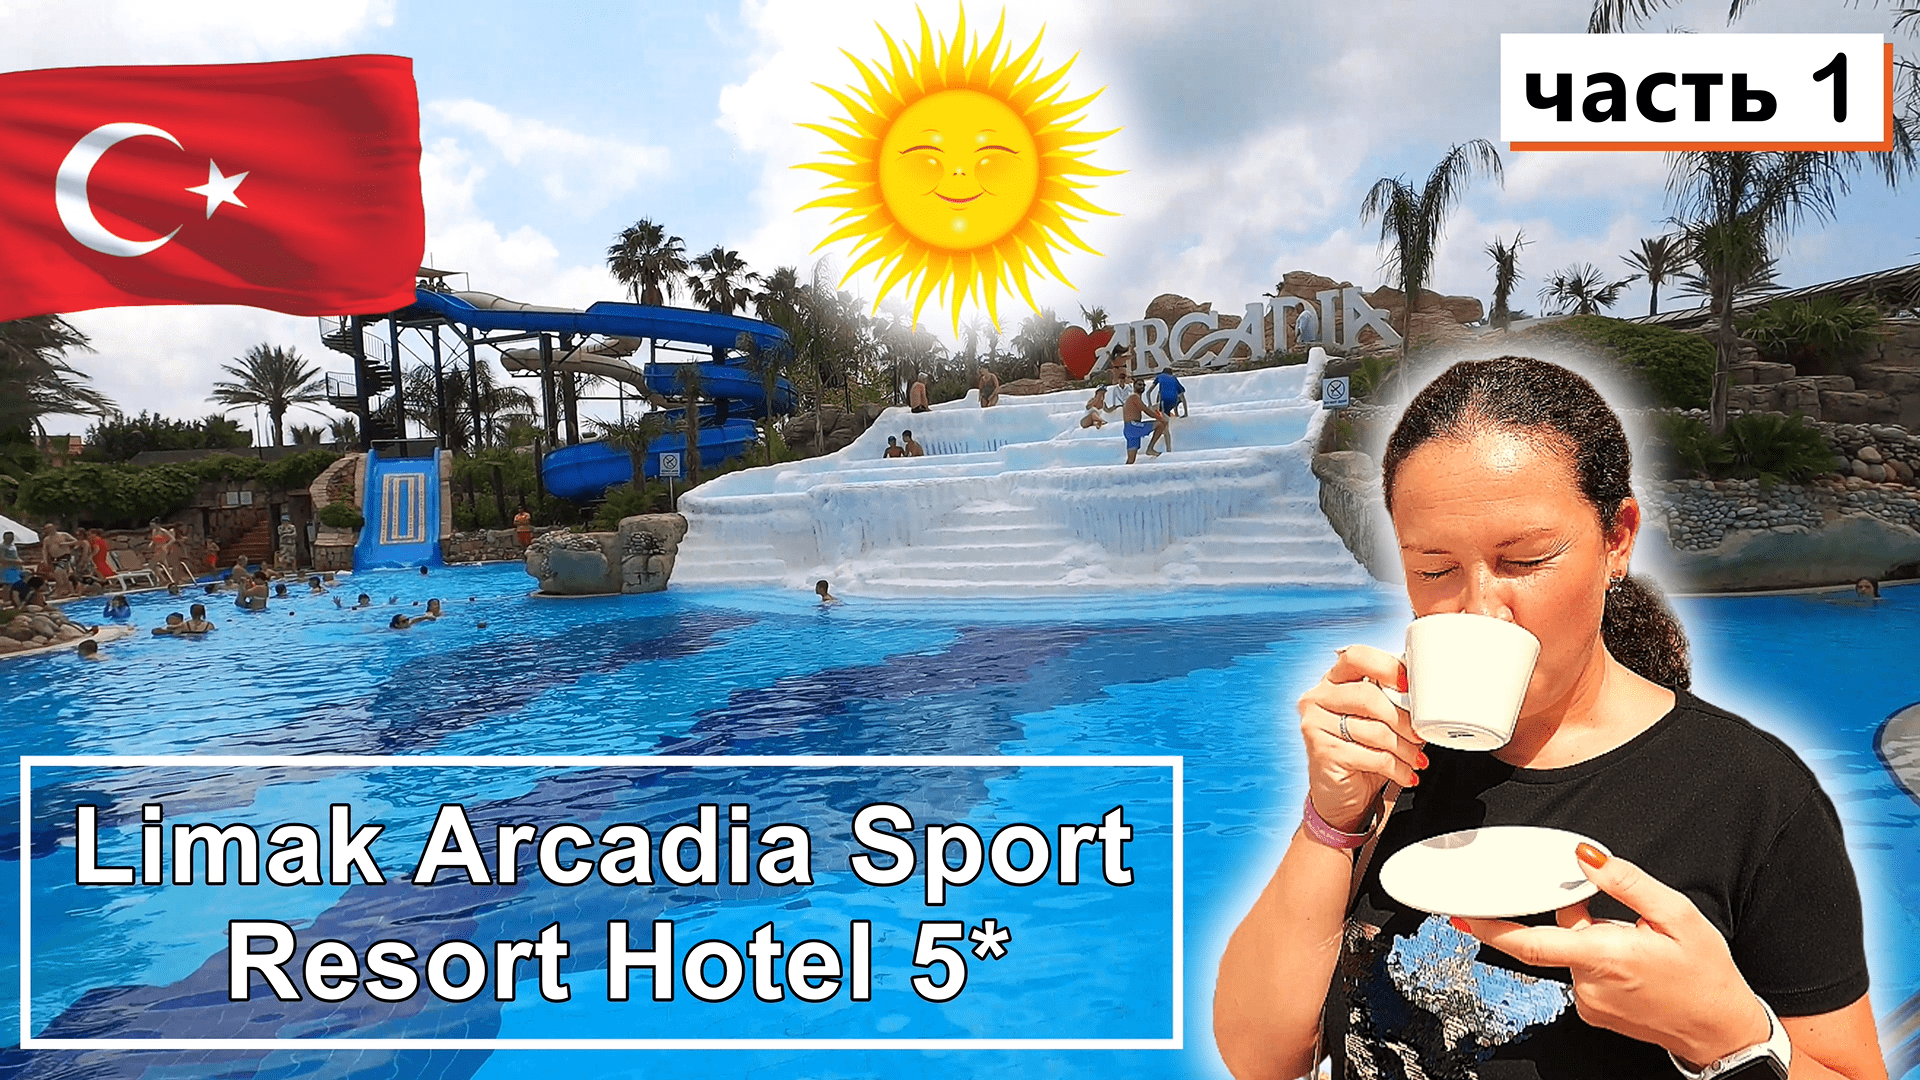 Limak Arcadia Sport Resort Hotel 5*!!! Первые впечатления - Классный номер и уютная территория!!!